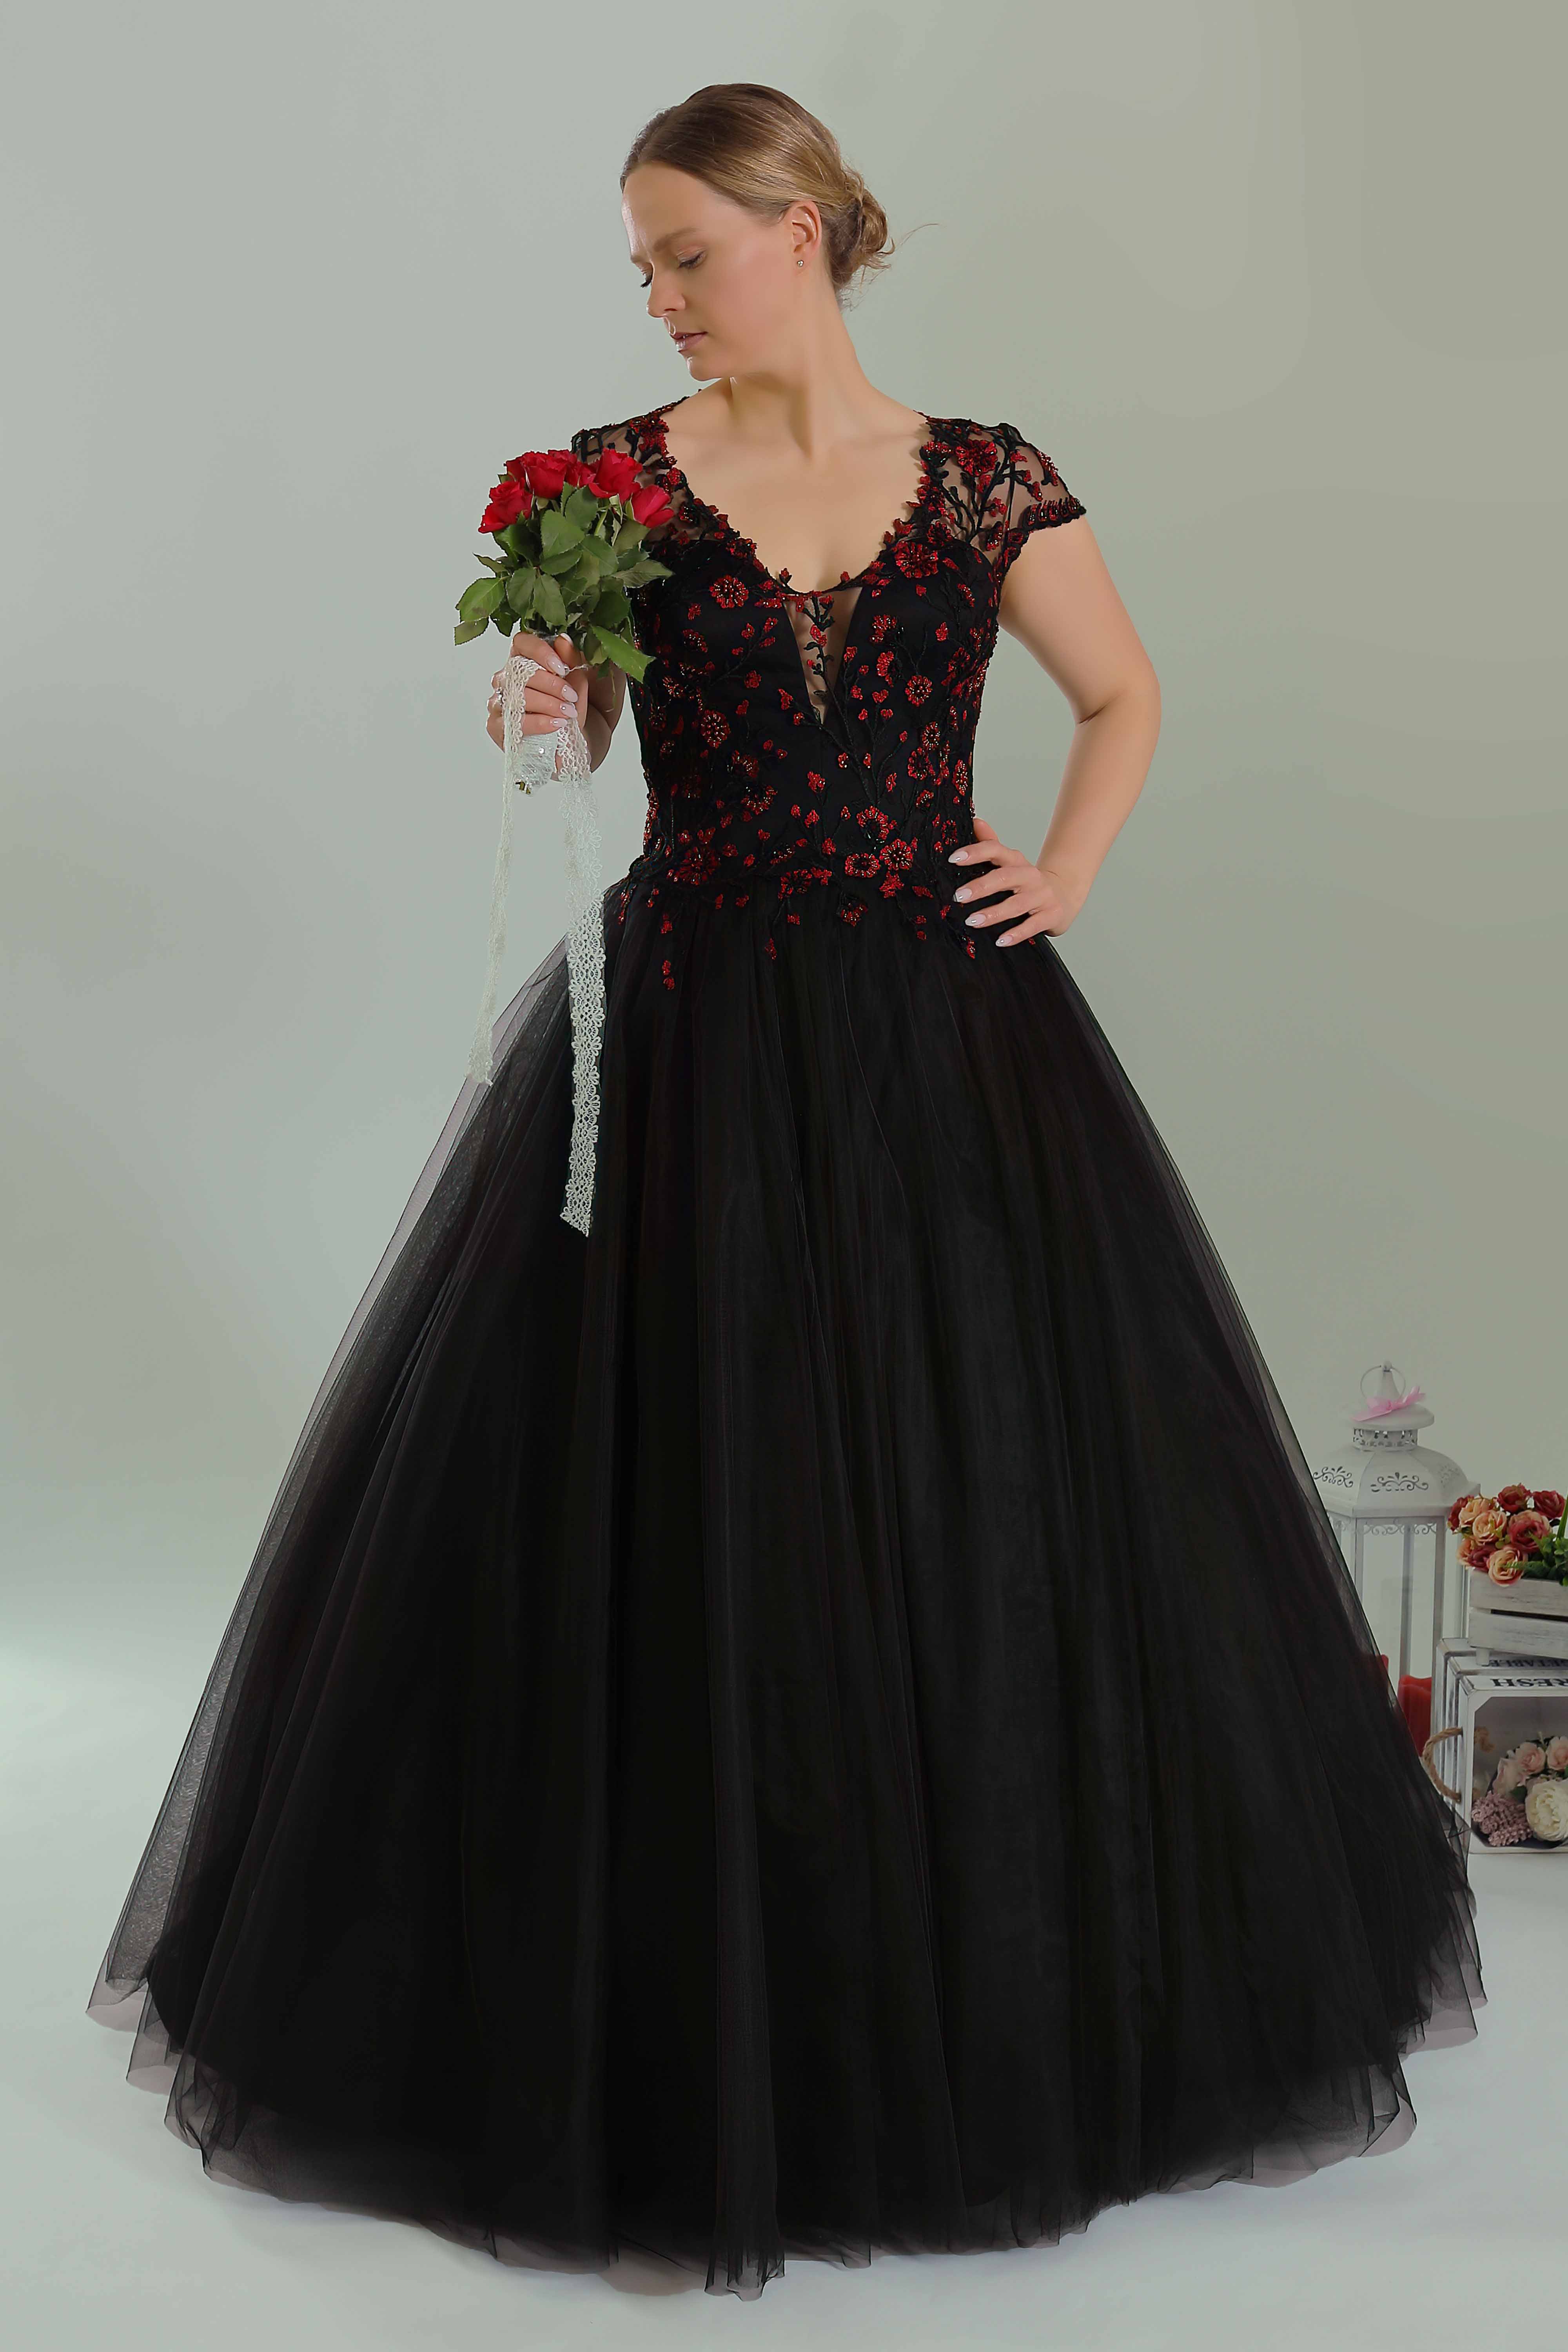 Schantal Brautkleid aus der Kollektion „Queen XXL“, Modell 2213 XXL.